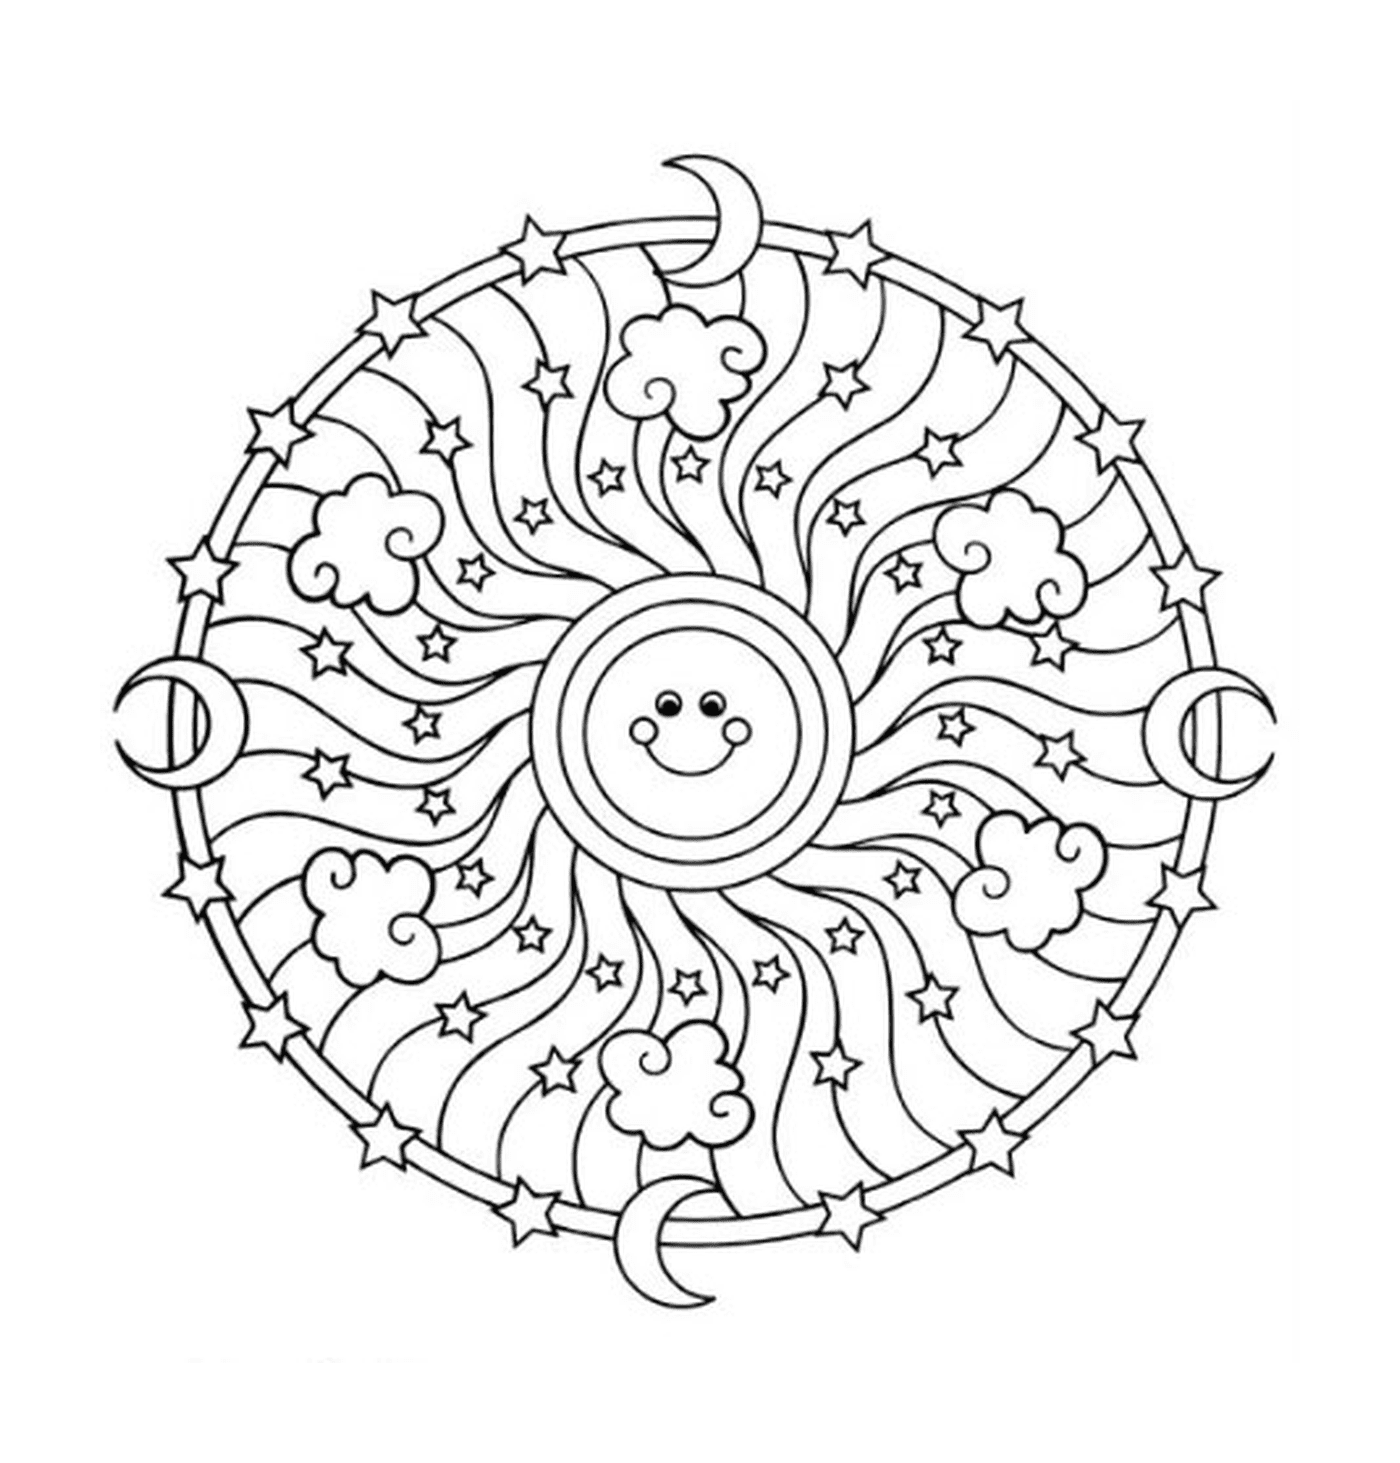  Sonne und Mond in einem Mandala 